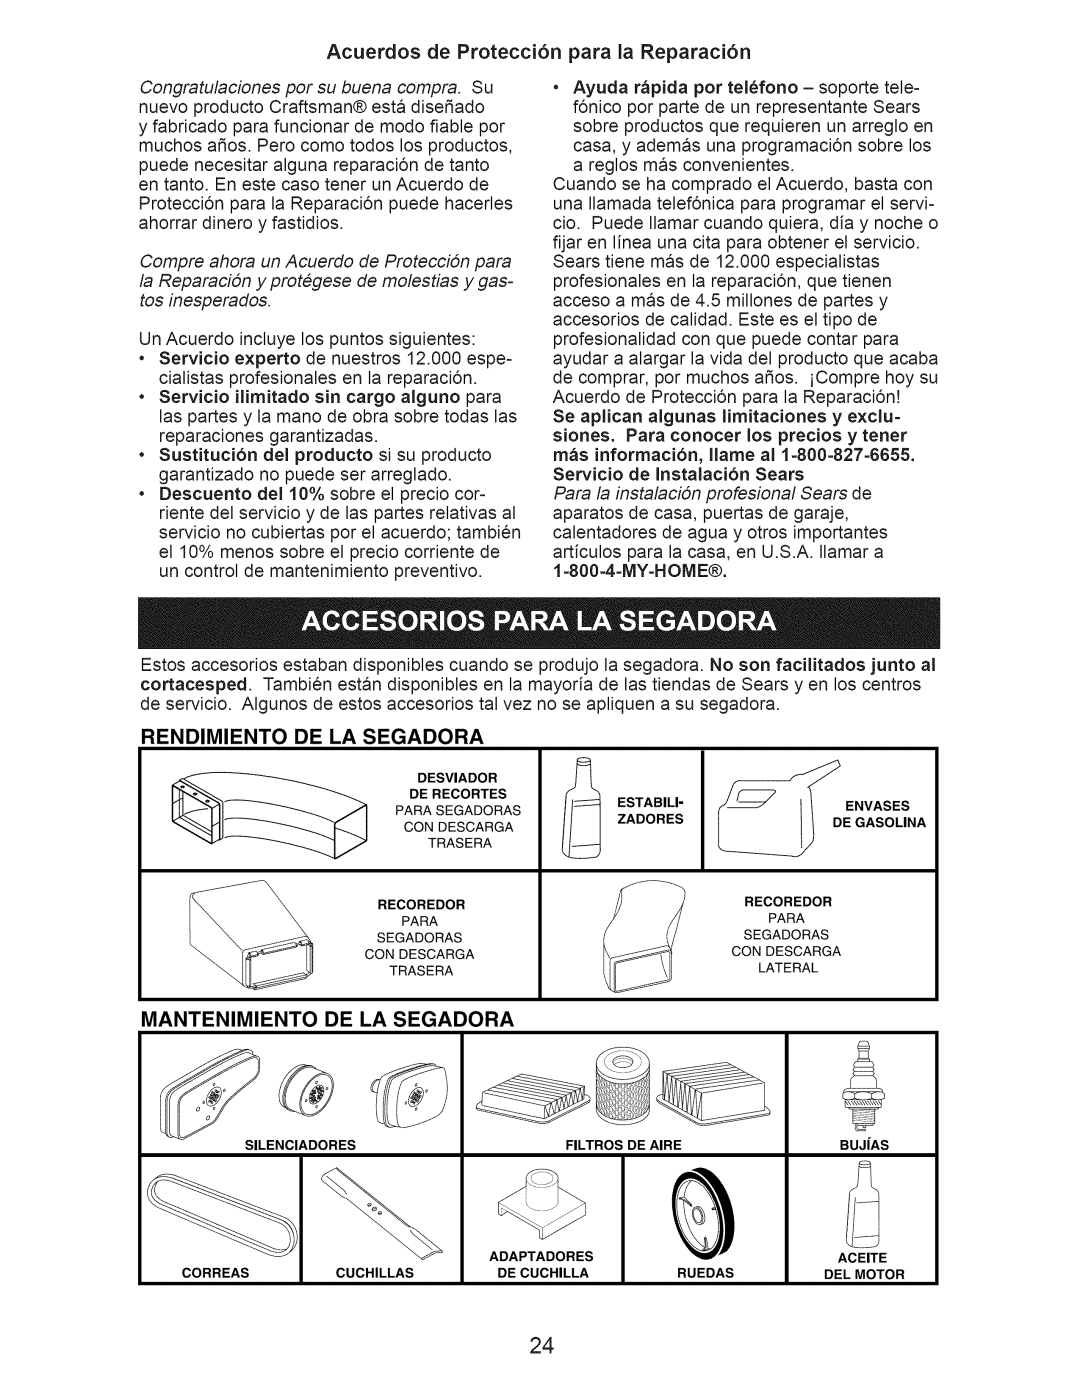 Craftsman 917.374362 Acuerdos de Protecci6n para la Reparaci6n, Rendimiento De La Segadora, Mantenimiento De La Segadora 